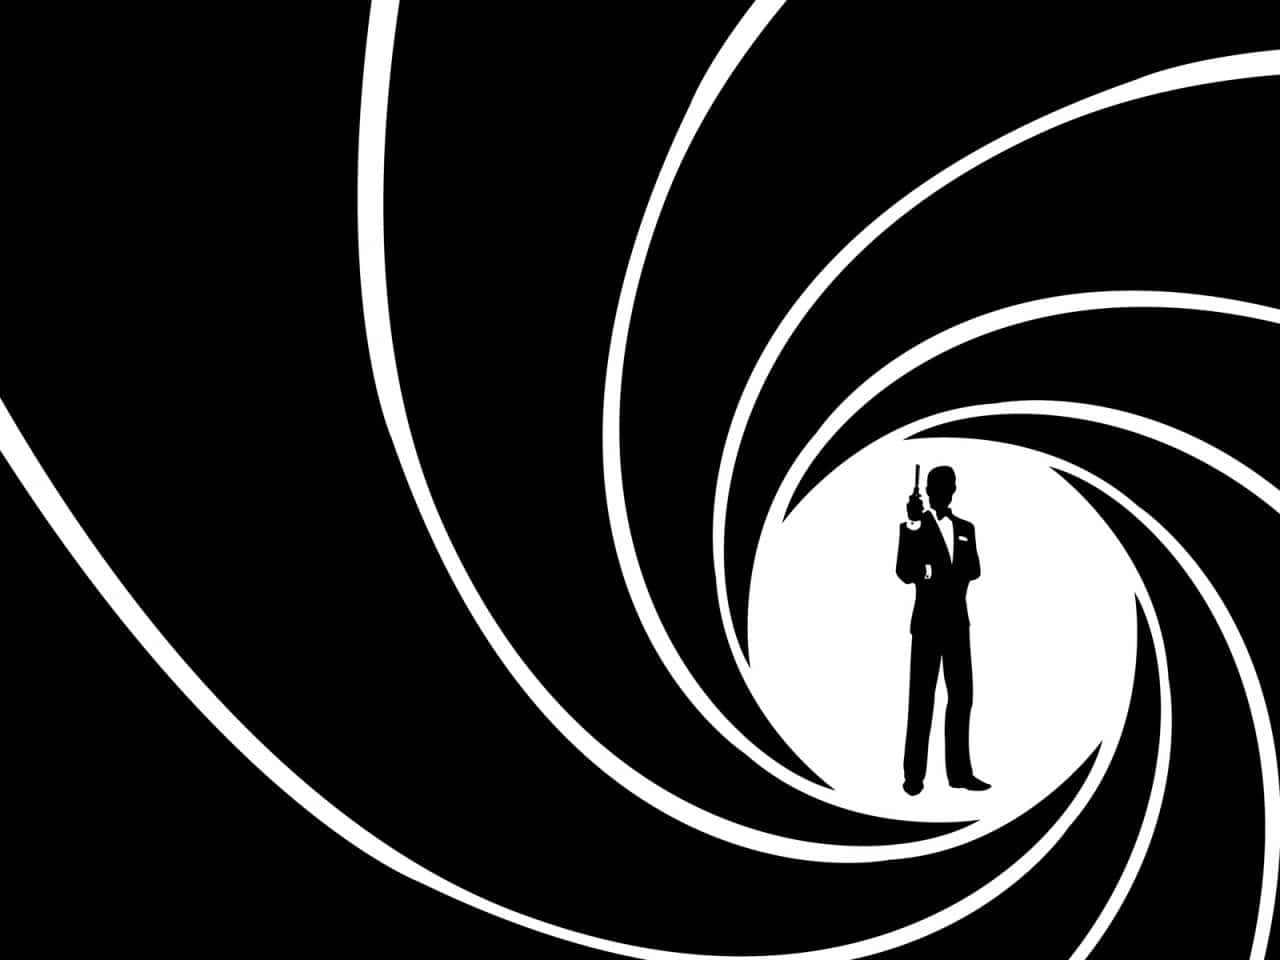 10 acteurs qui pourraient incarner le prochain James Bond